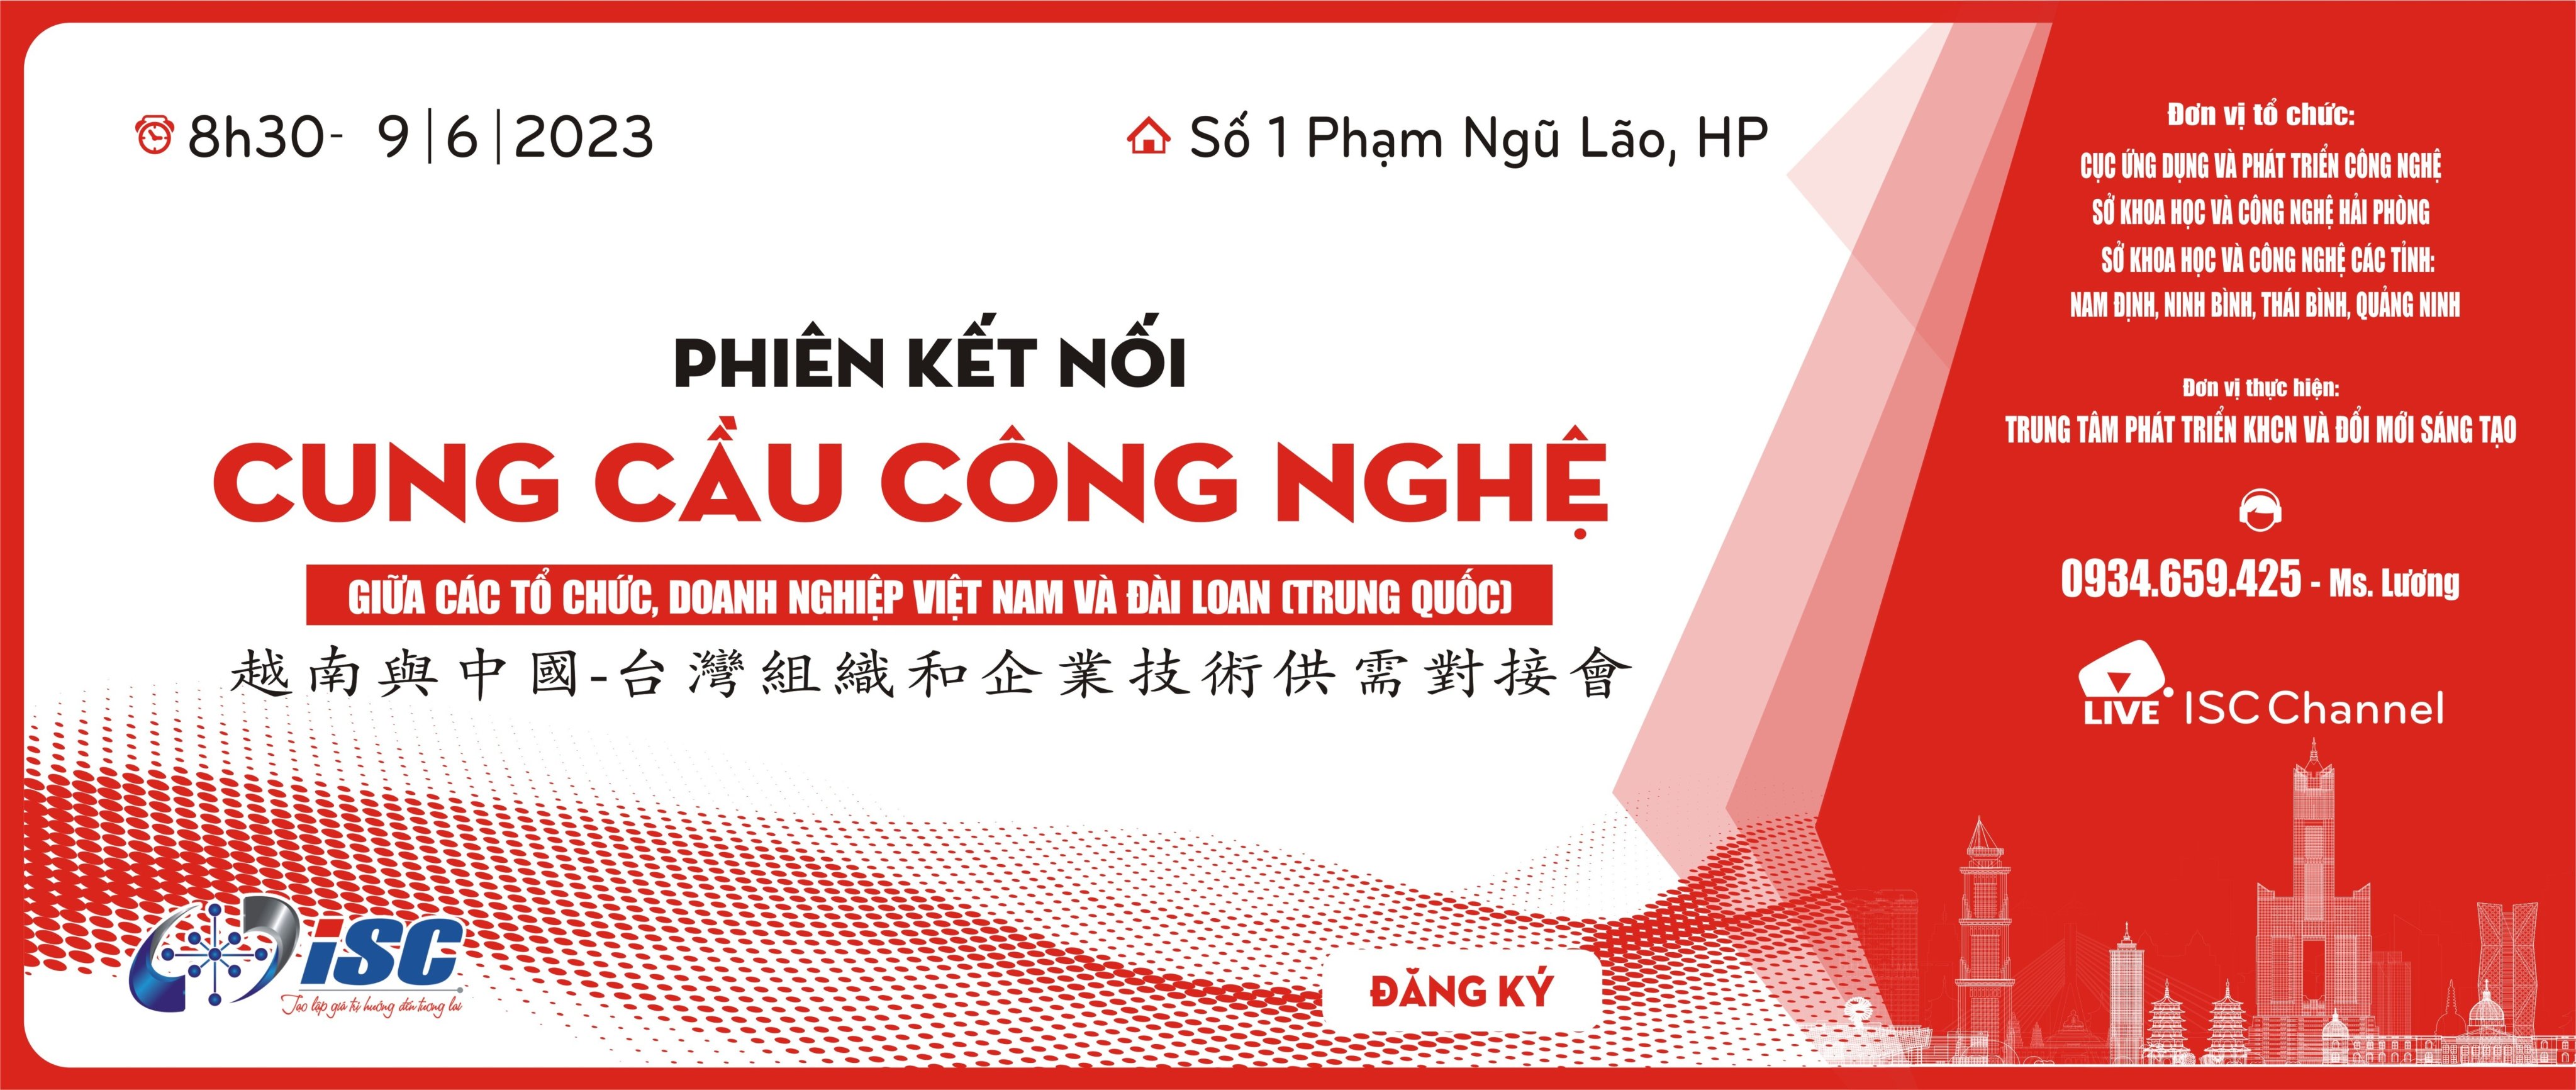 Phiên kết nối cung cầu công nghệ giữa các tổ chức, doanh nghiệp Việt Nam và Đài Loan (Trung Quốc)